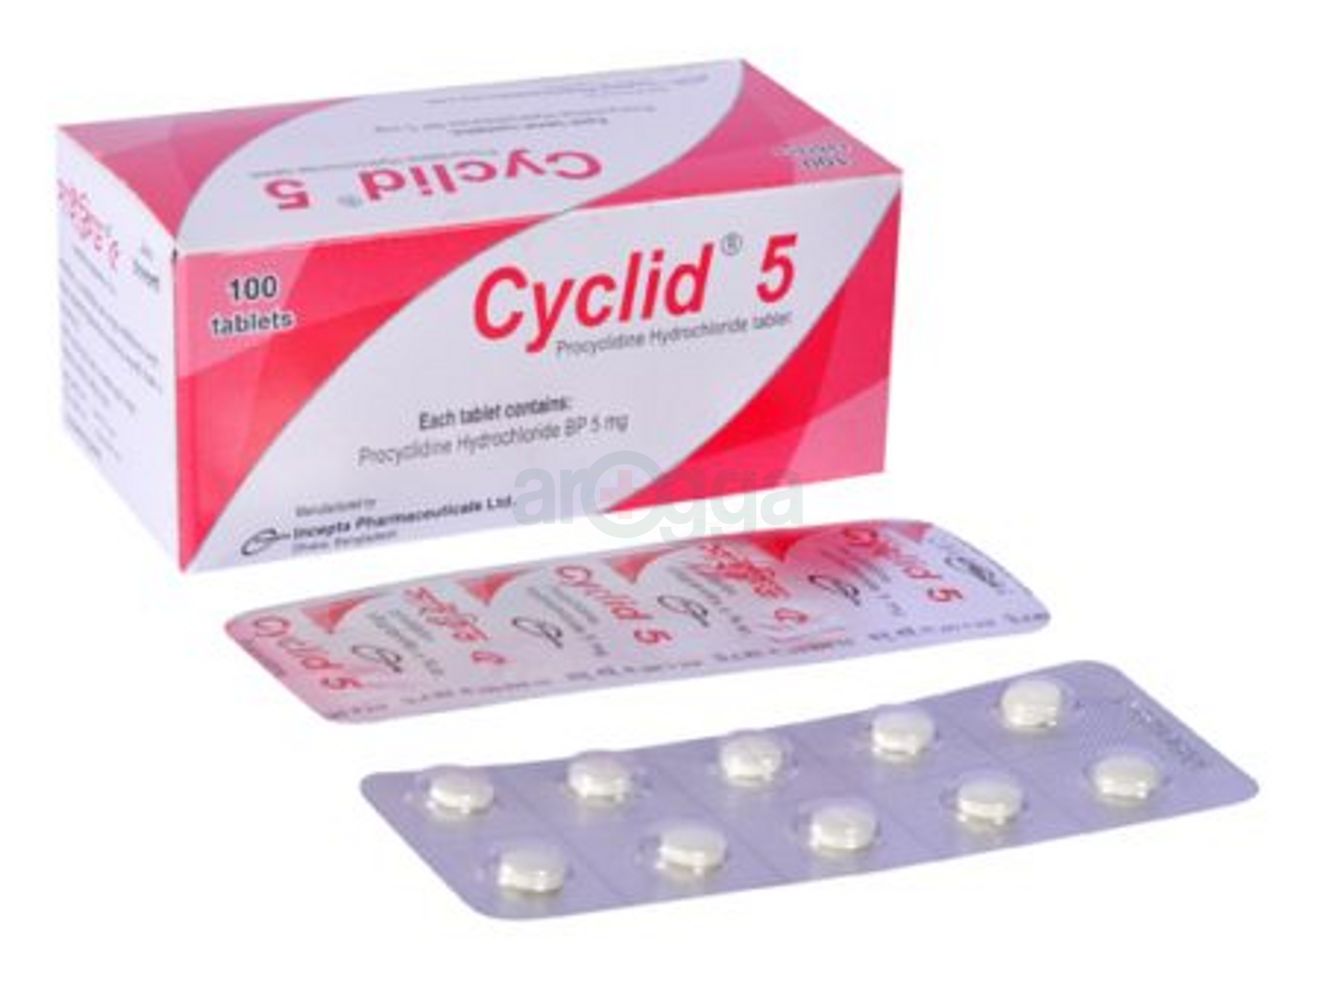 Cyclid 5